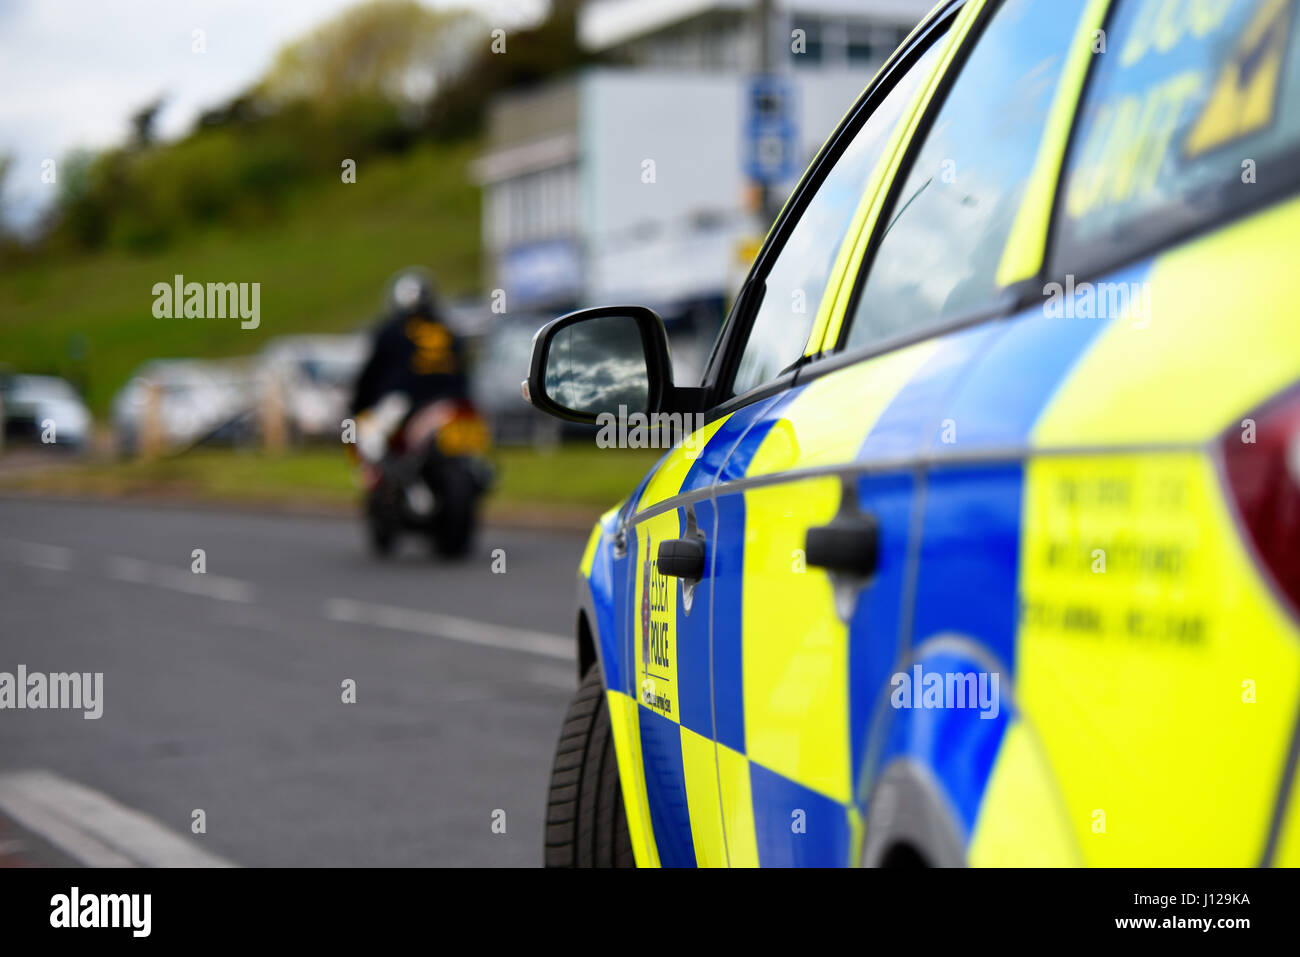 Polizeiauto geparkt, während ein Motorrad geht. Keine Flächen sichtbar. Mit Platz für Kopie Stockfoto